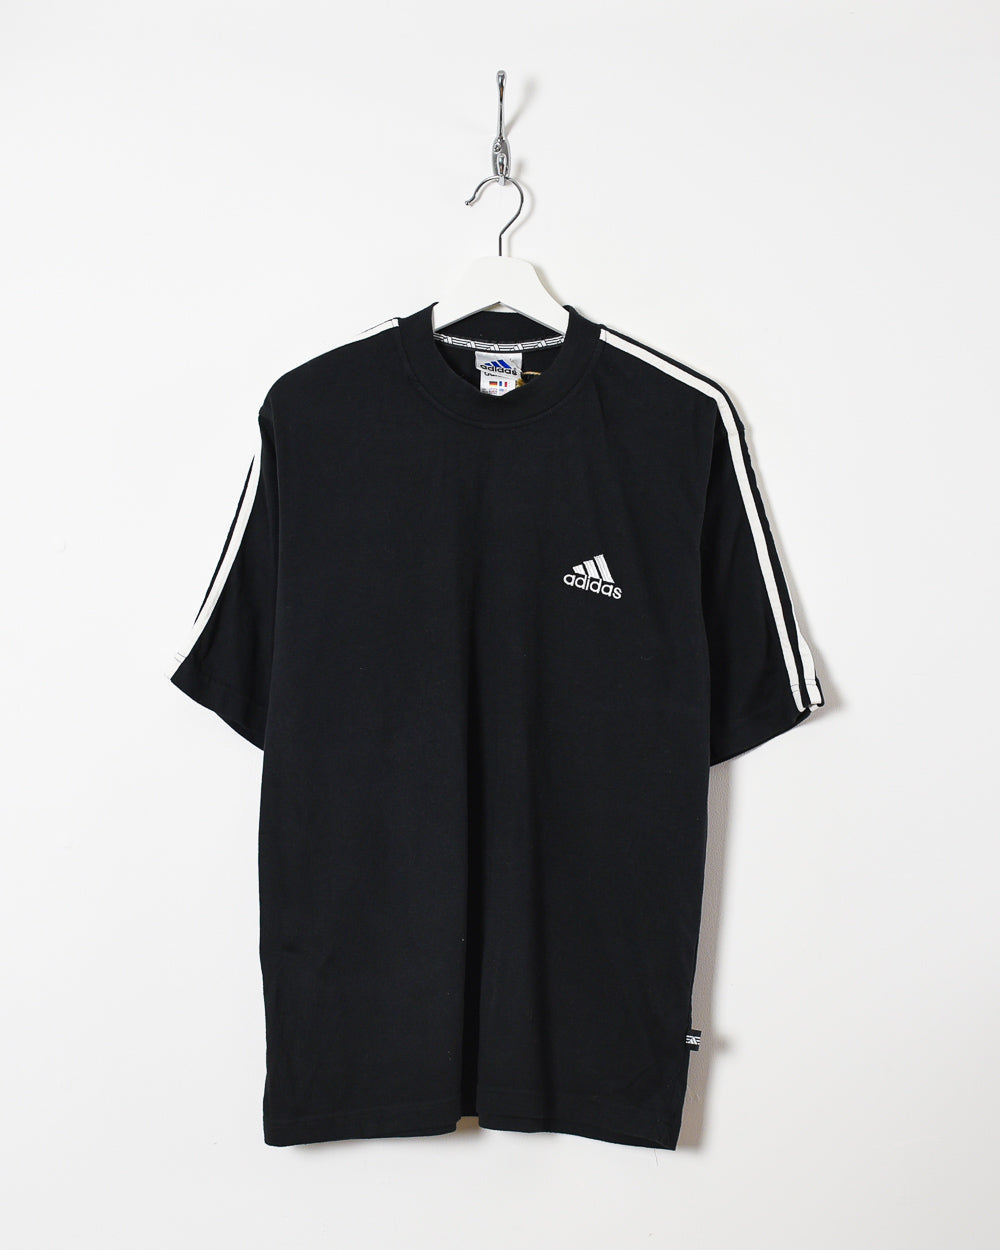 Black Adidas T-Shirt - Medium